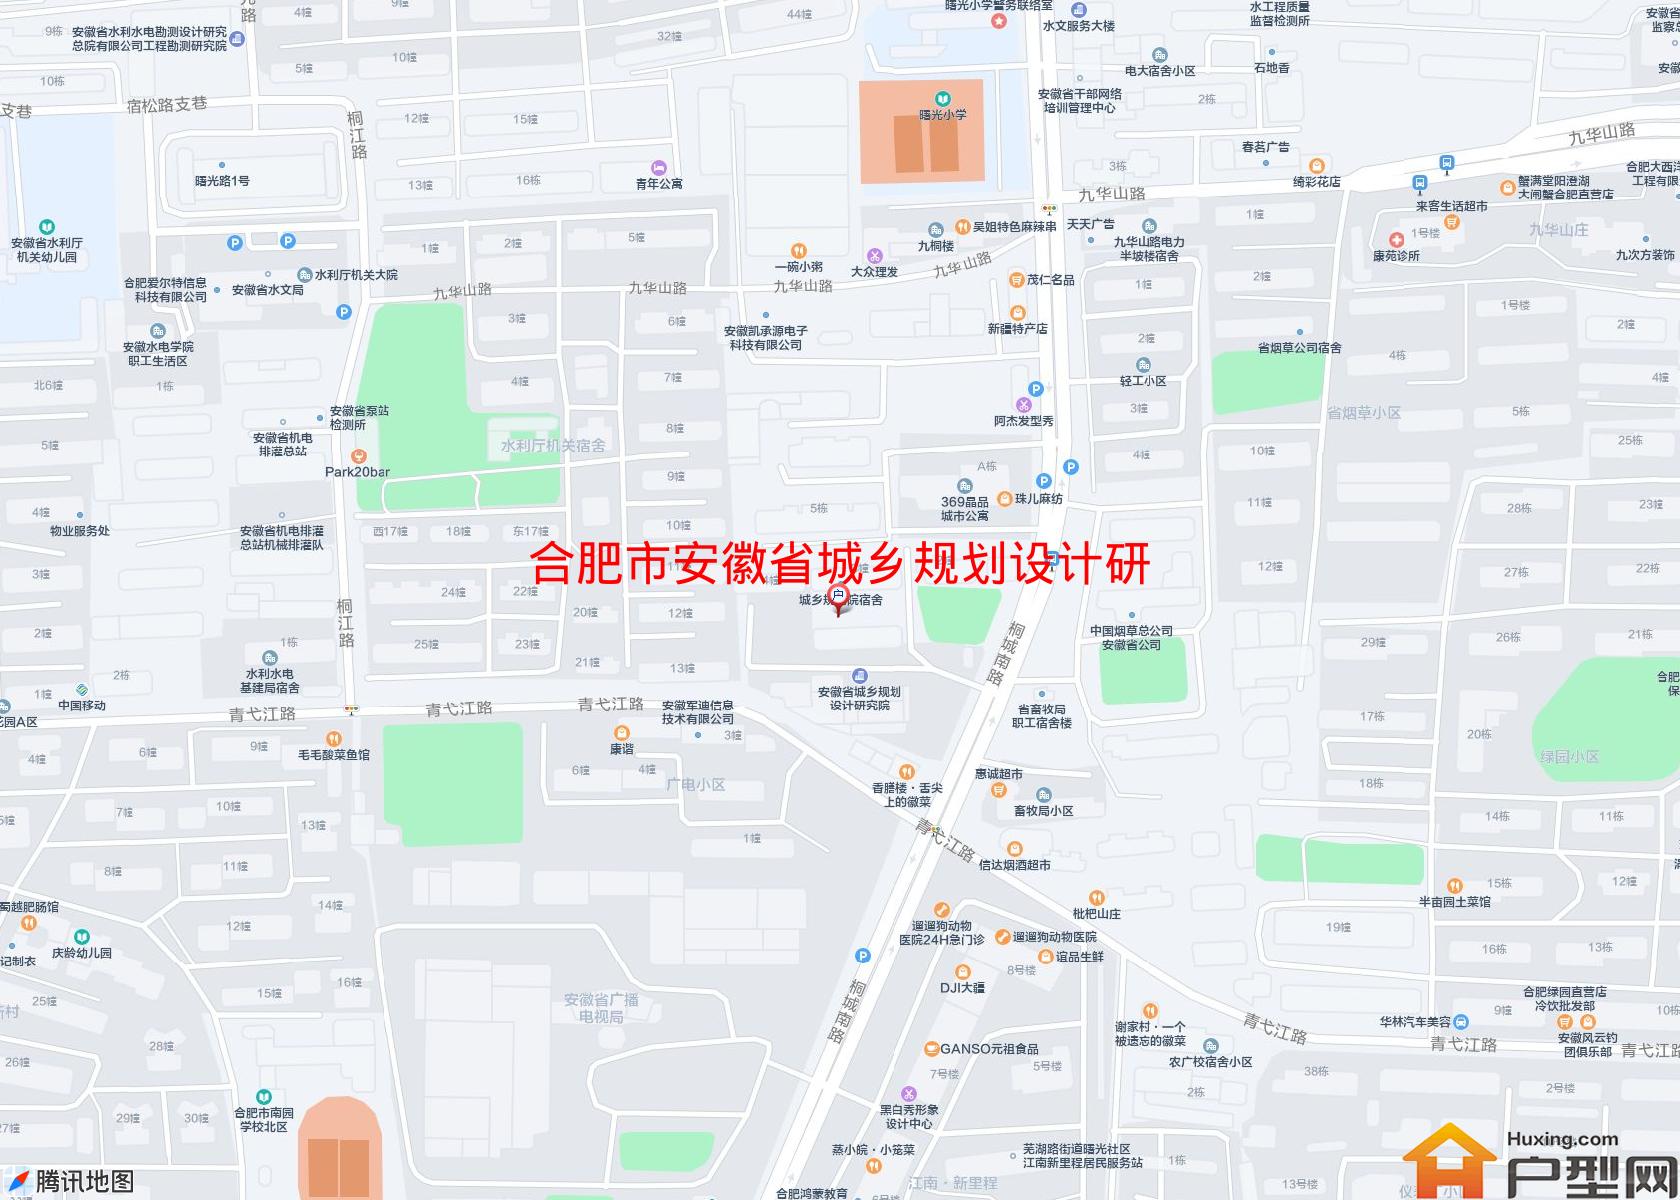 安徽省城乡规划设计研究院宿舍小区 - 户型网